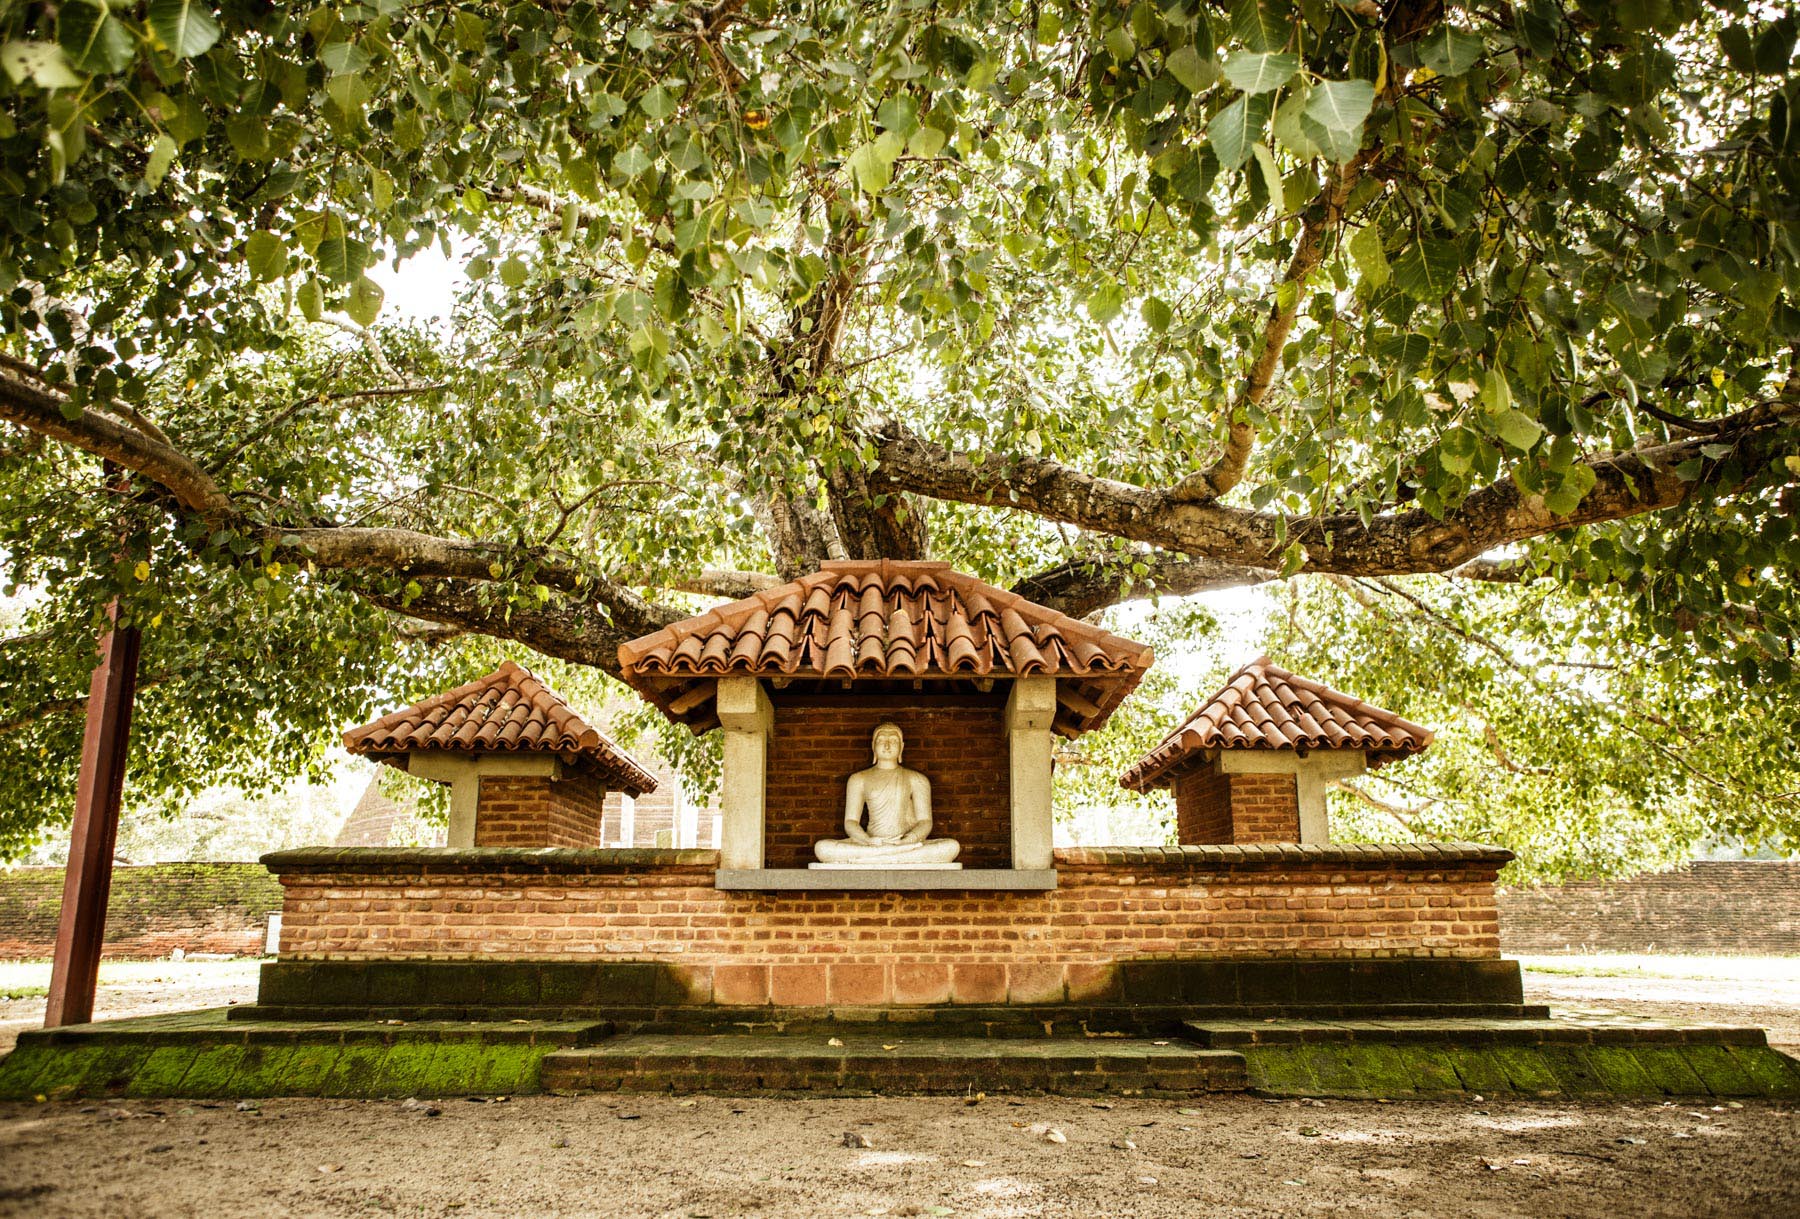 Thaulle-Resort-Sri-Lanka-Activites-Spirituality-Buddha-Natur